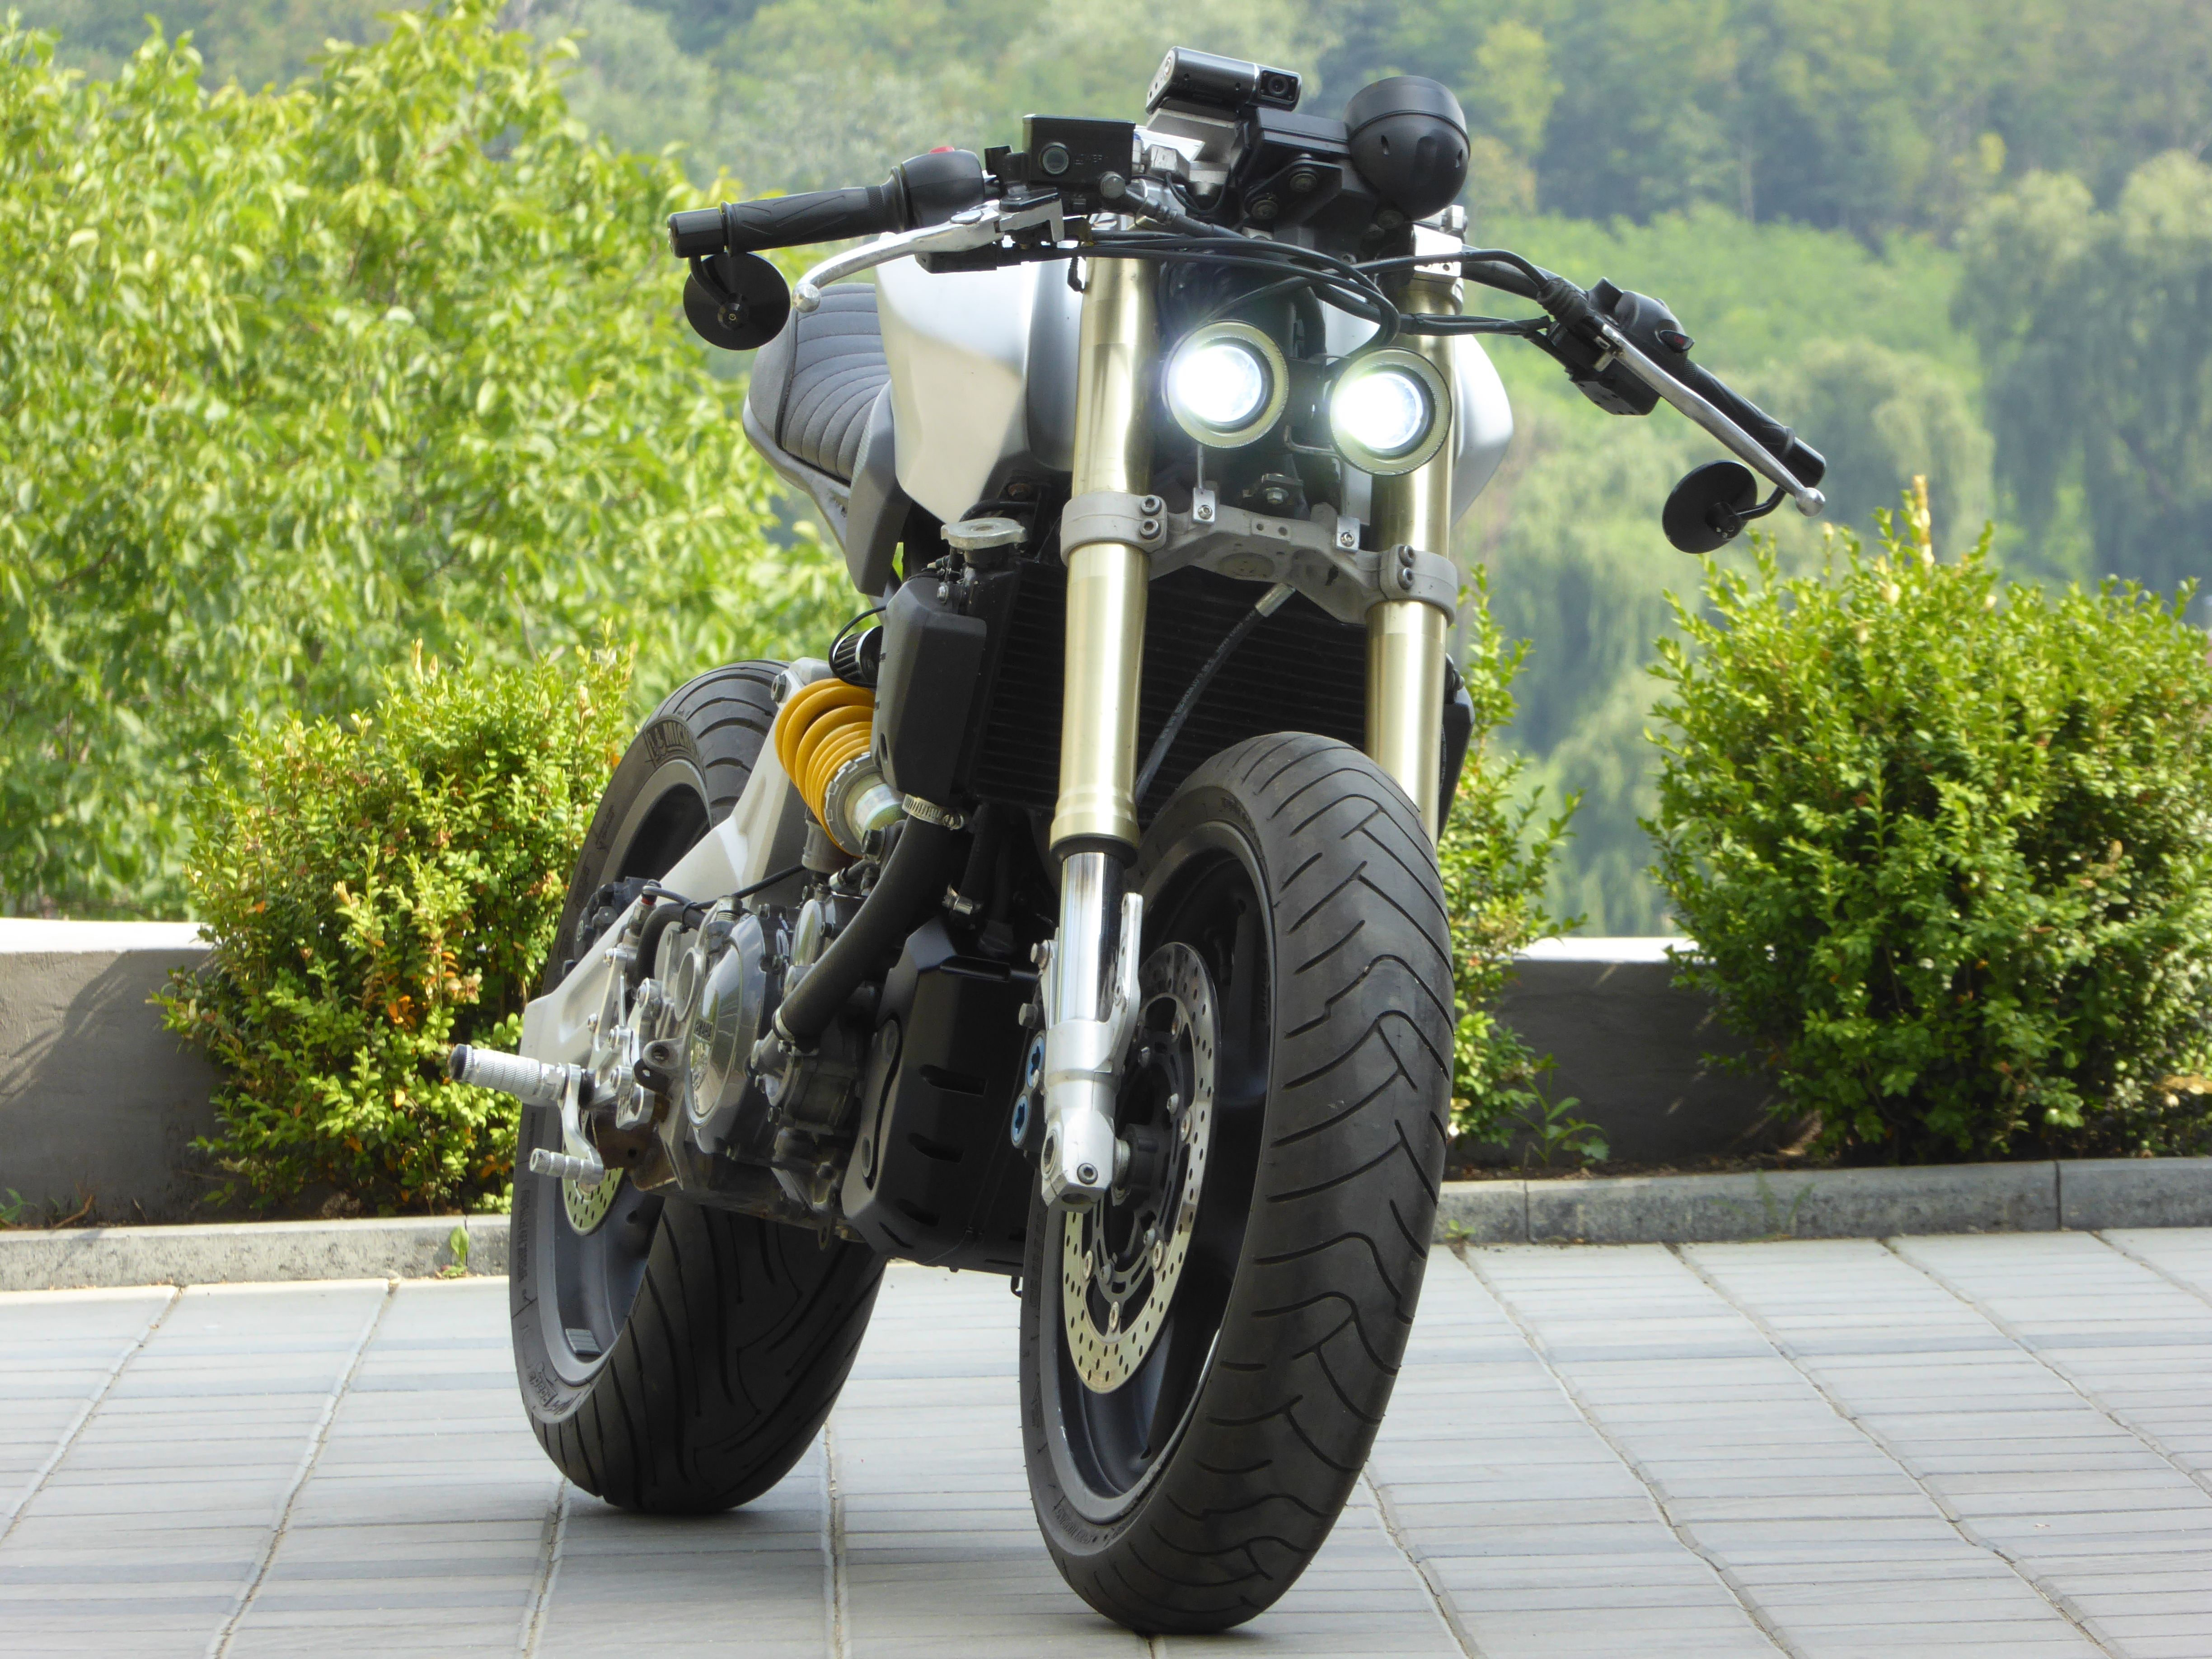 Тест-драйв мотоцикла Yamaha MT-01